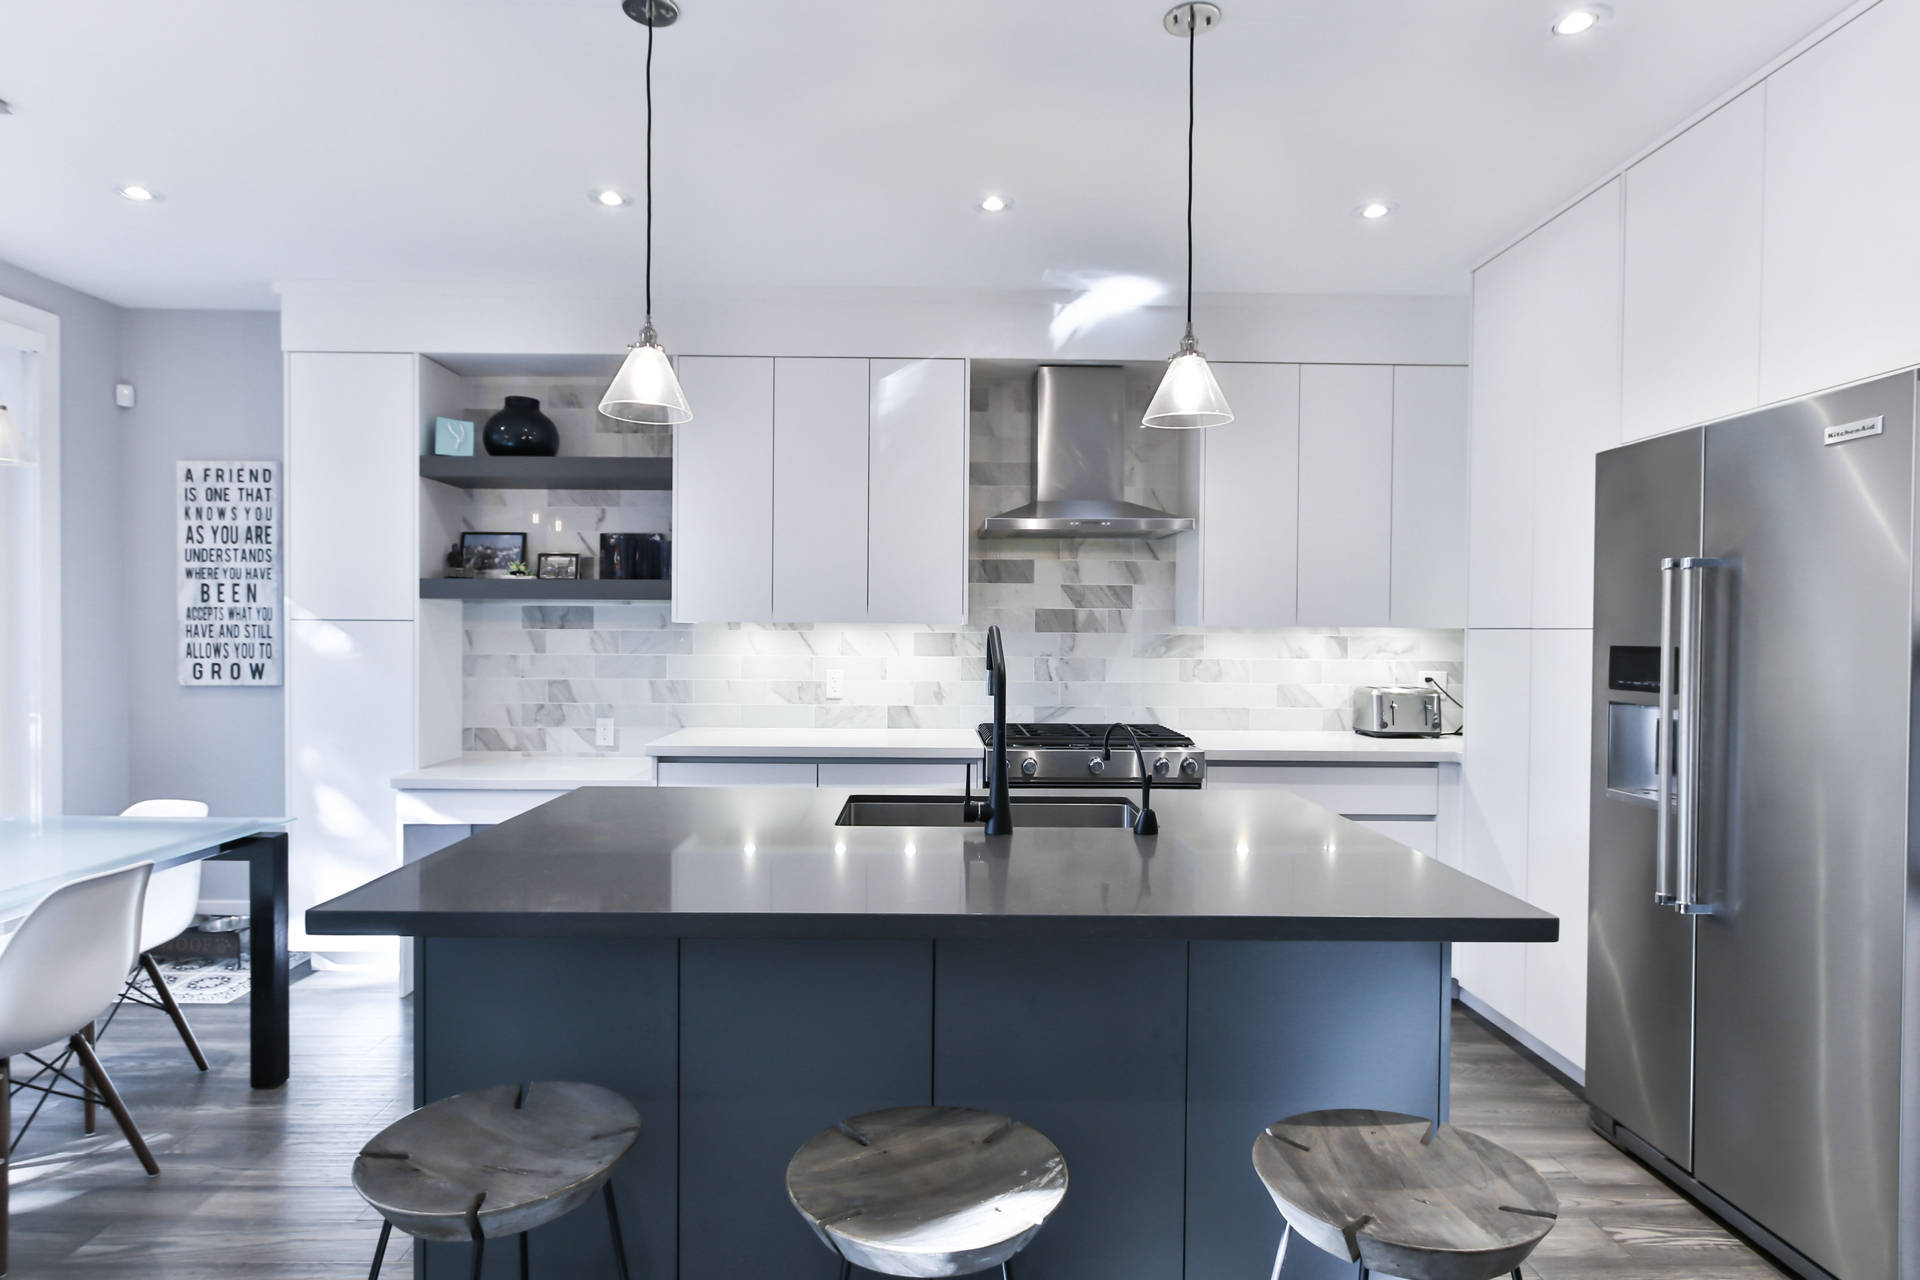 Caption: Modern Silver Kitchen Interior Background